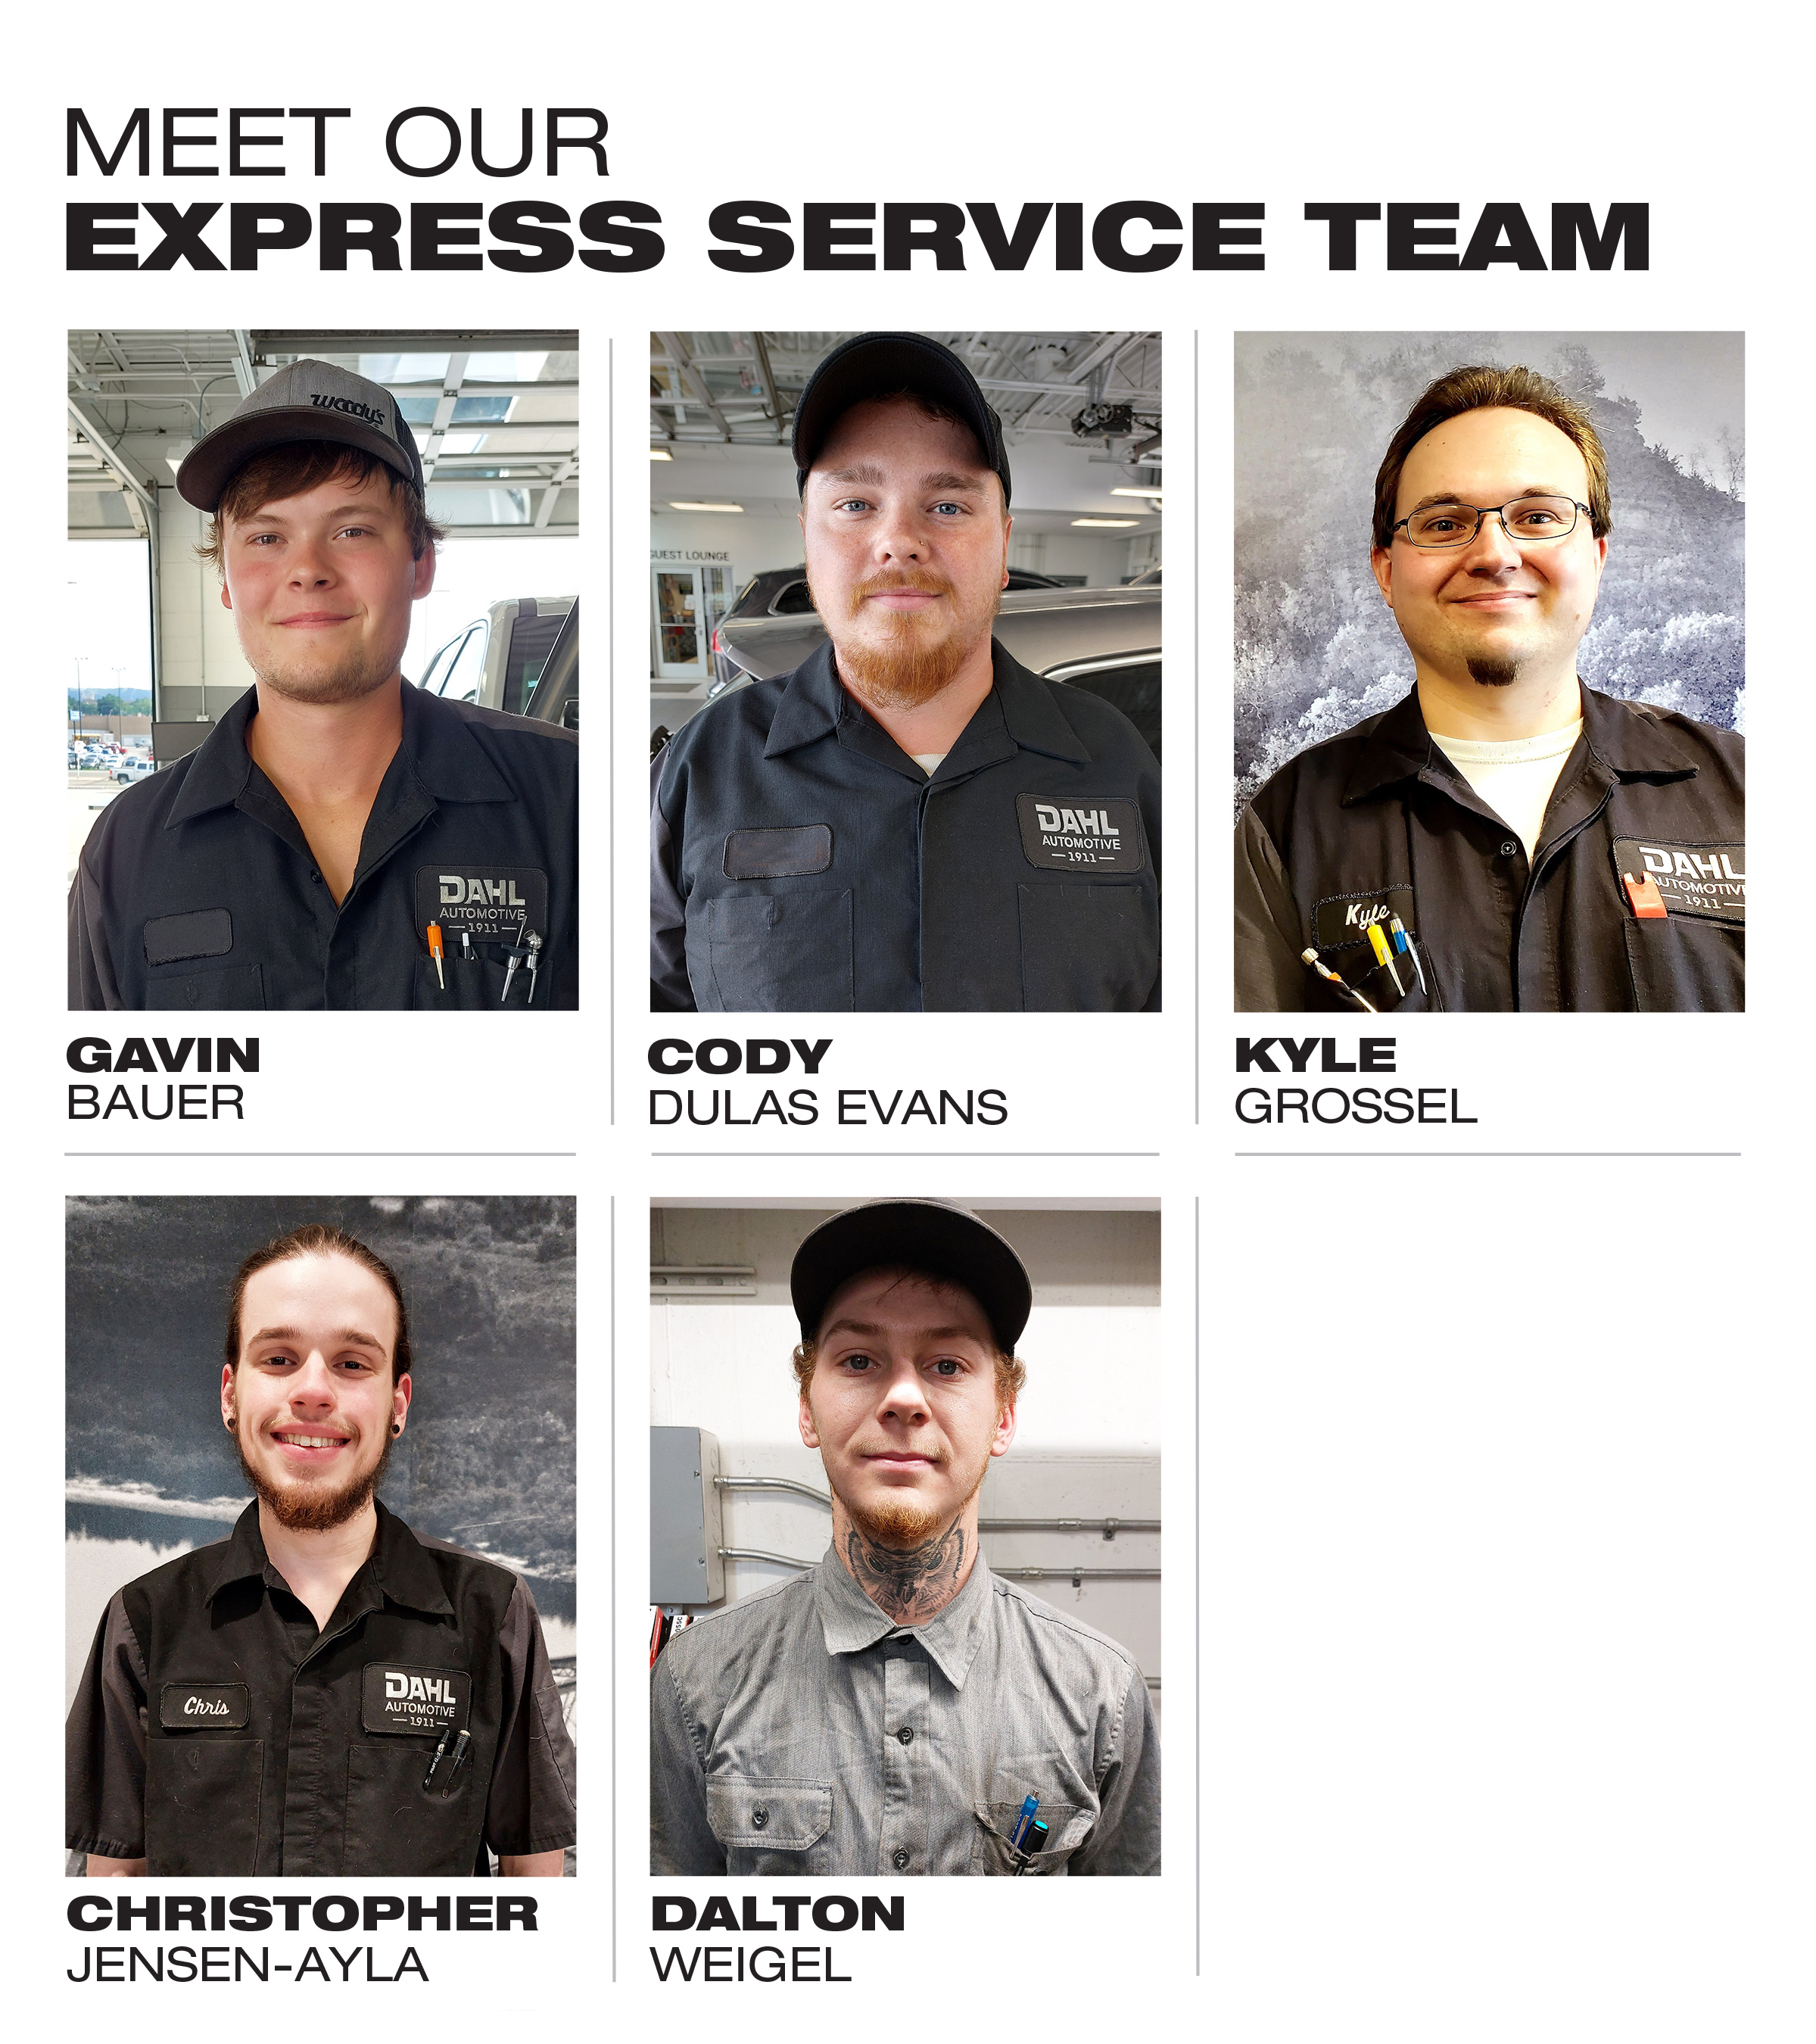 Dahls Meet our Express Service Team